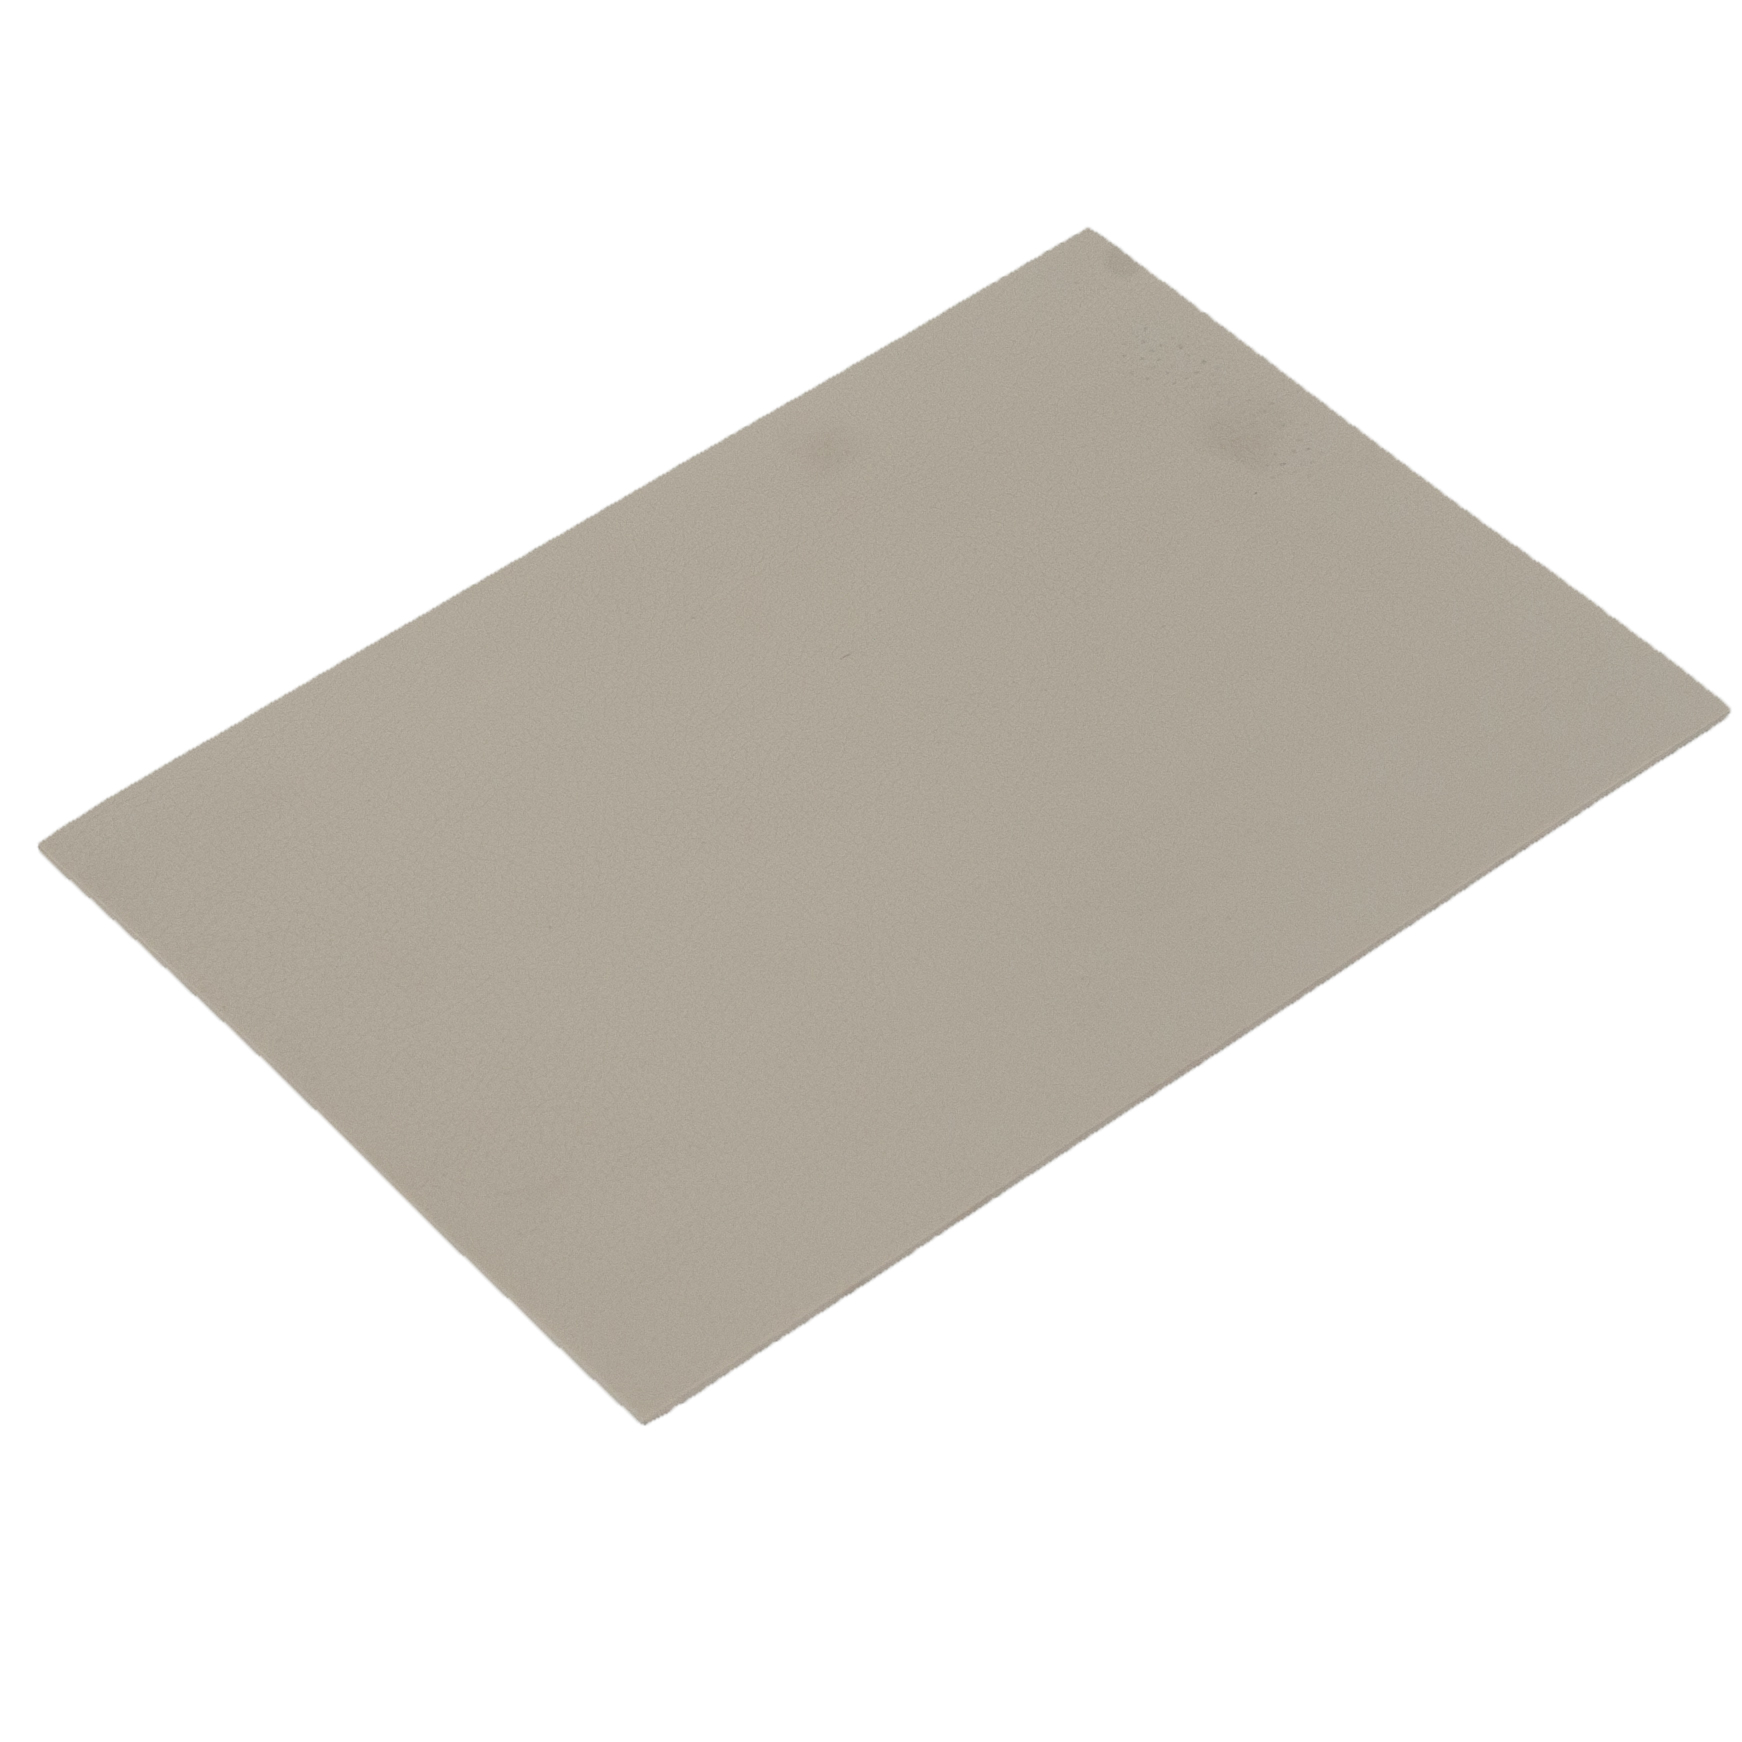 Heterogeneous PVC Flooring For Basement Sheet